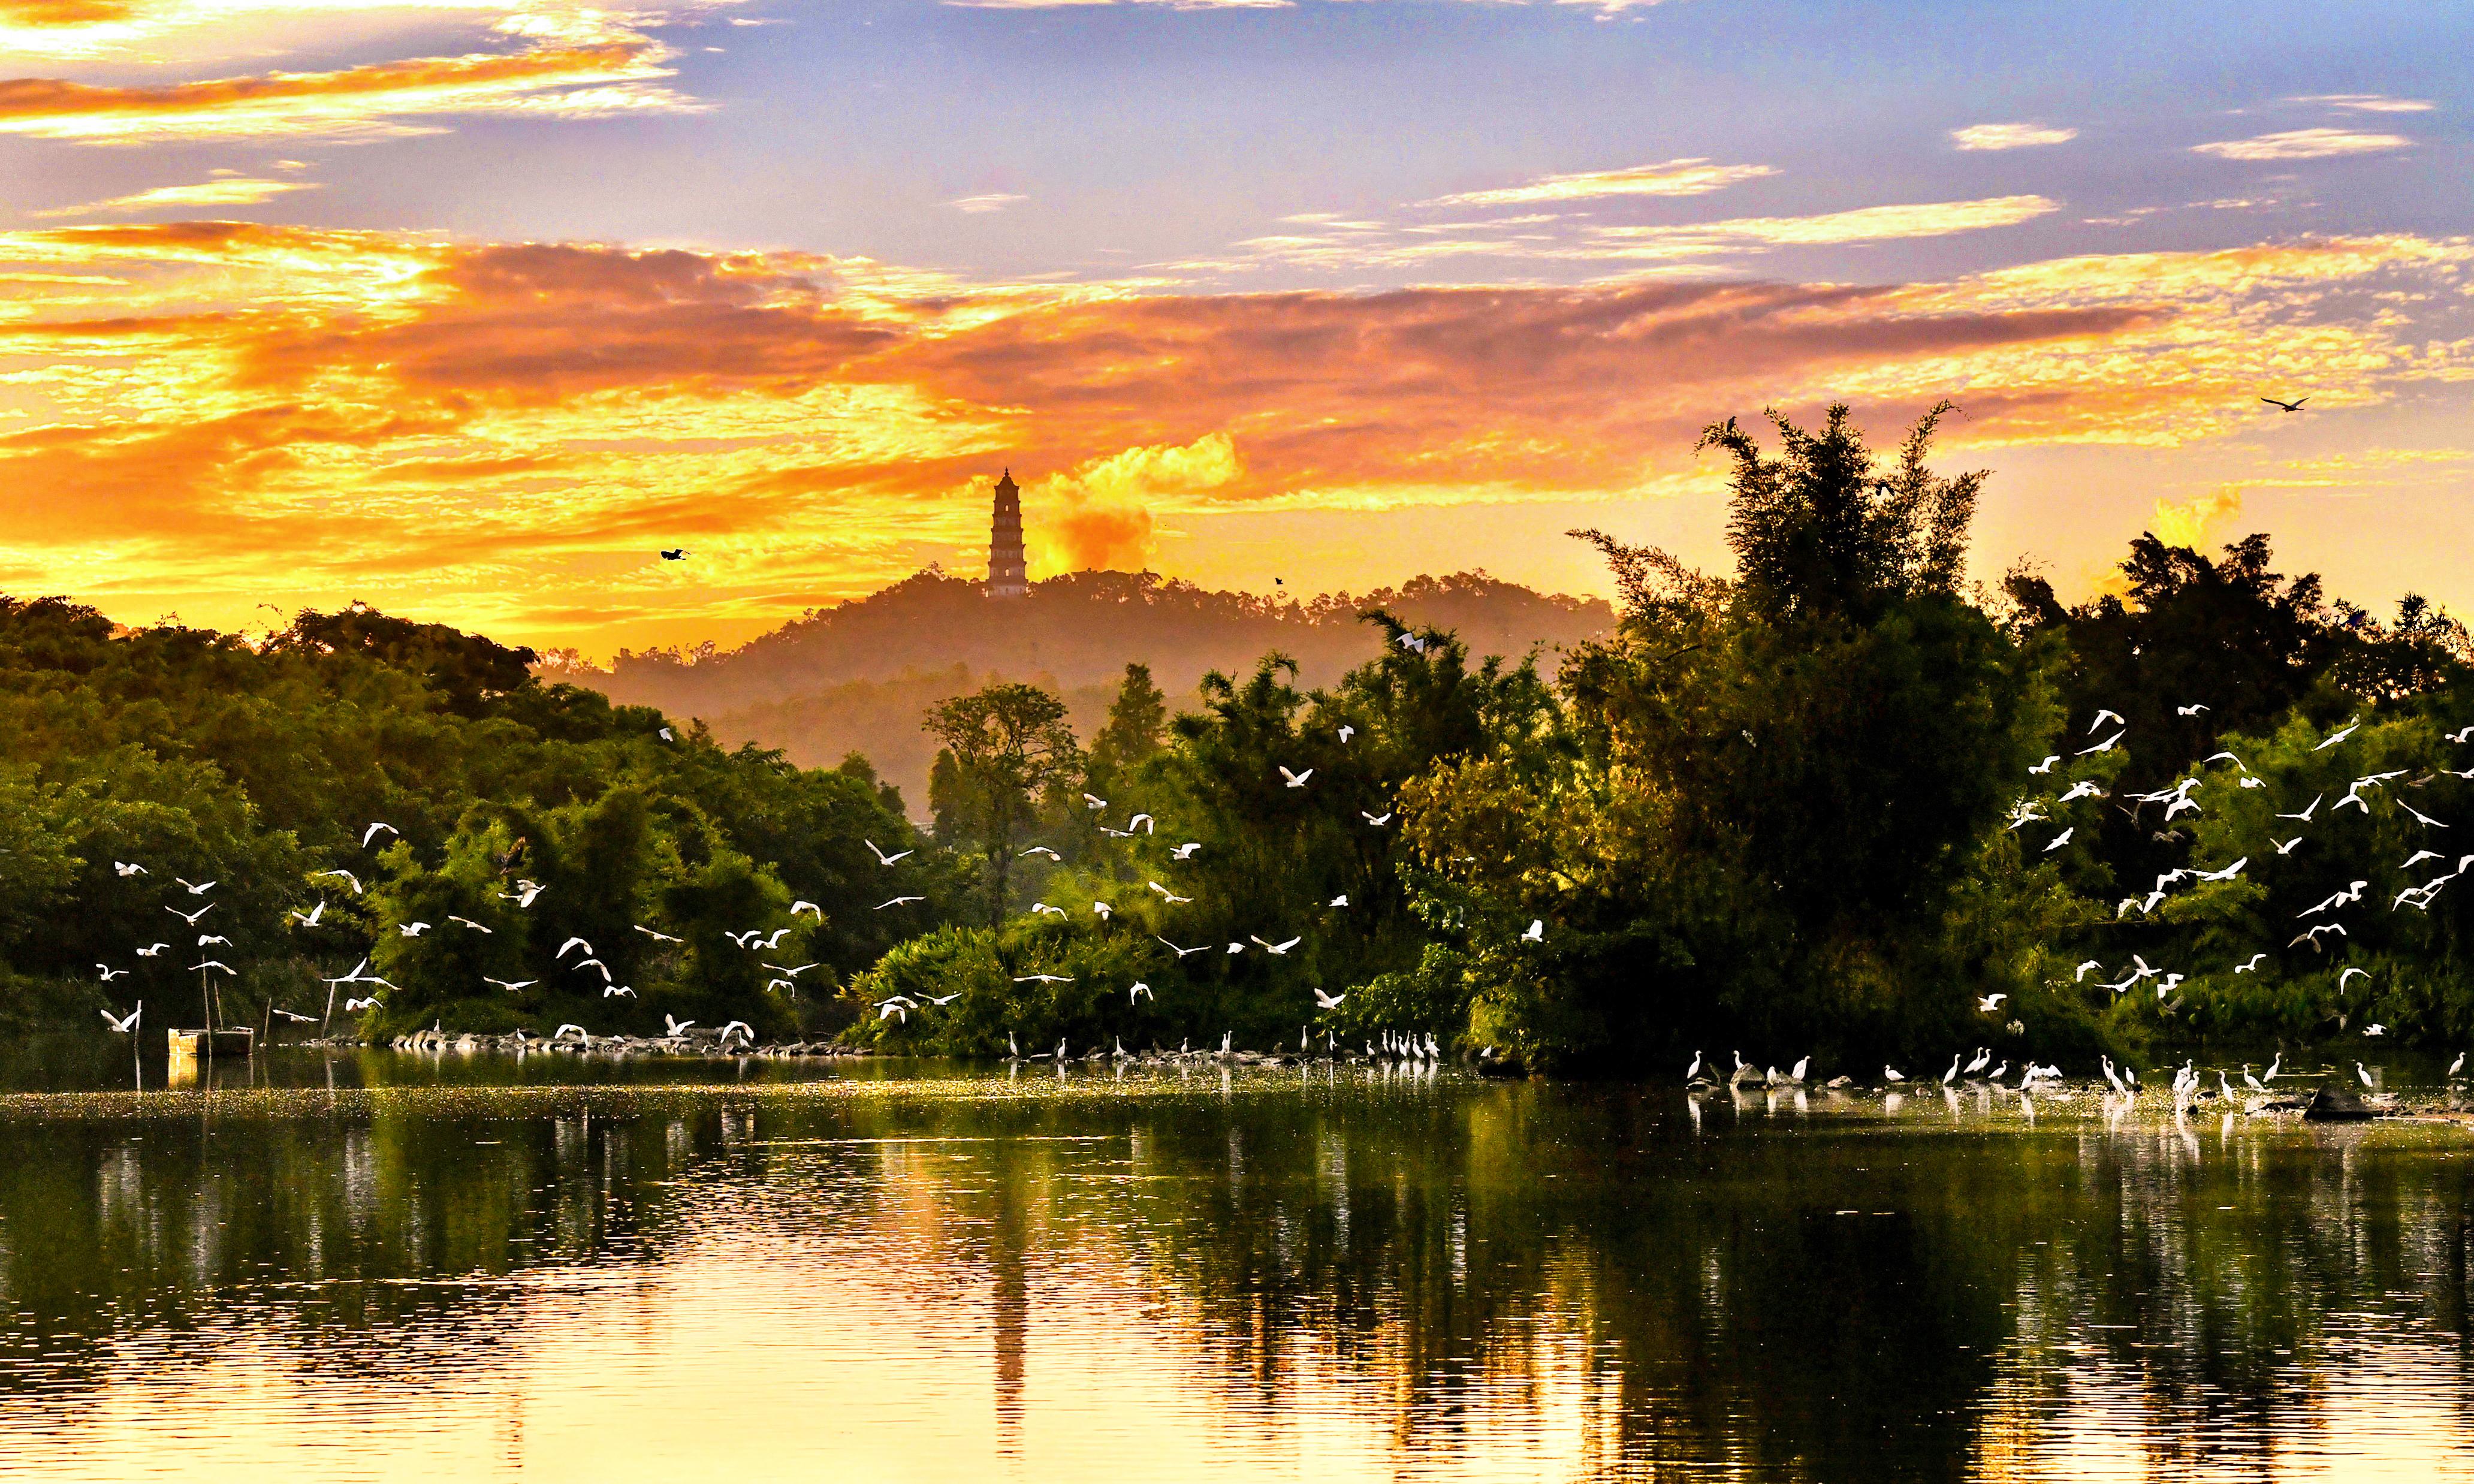 江門市啟超故裡·小鳥天堂文化旅游區被譽為人與自然和諧相處的生態文明典范。阮國志 攝